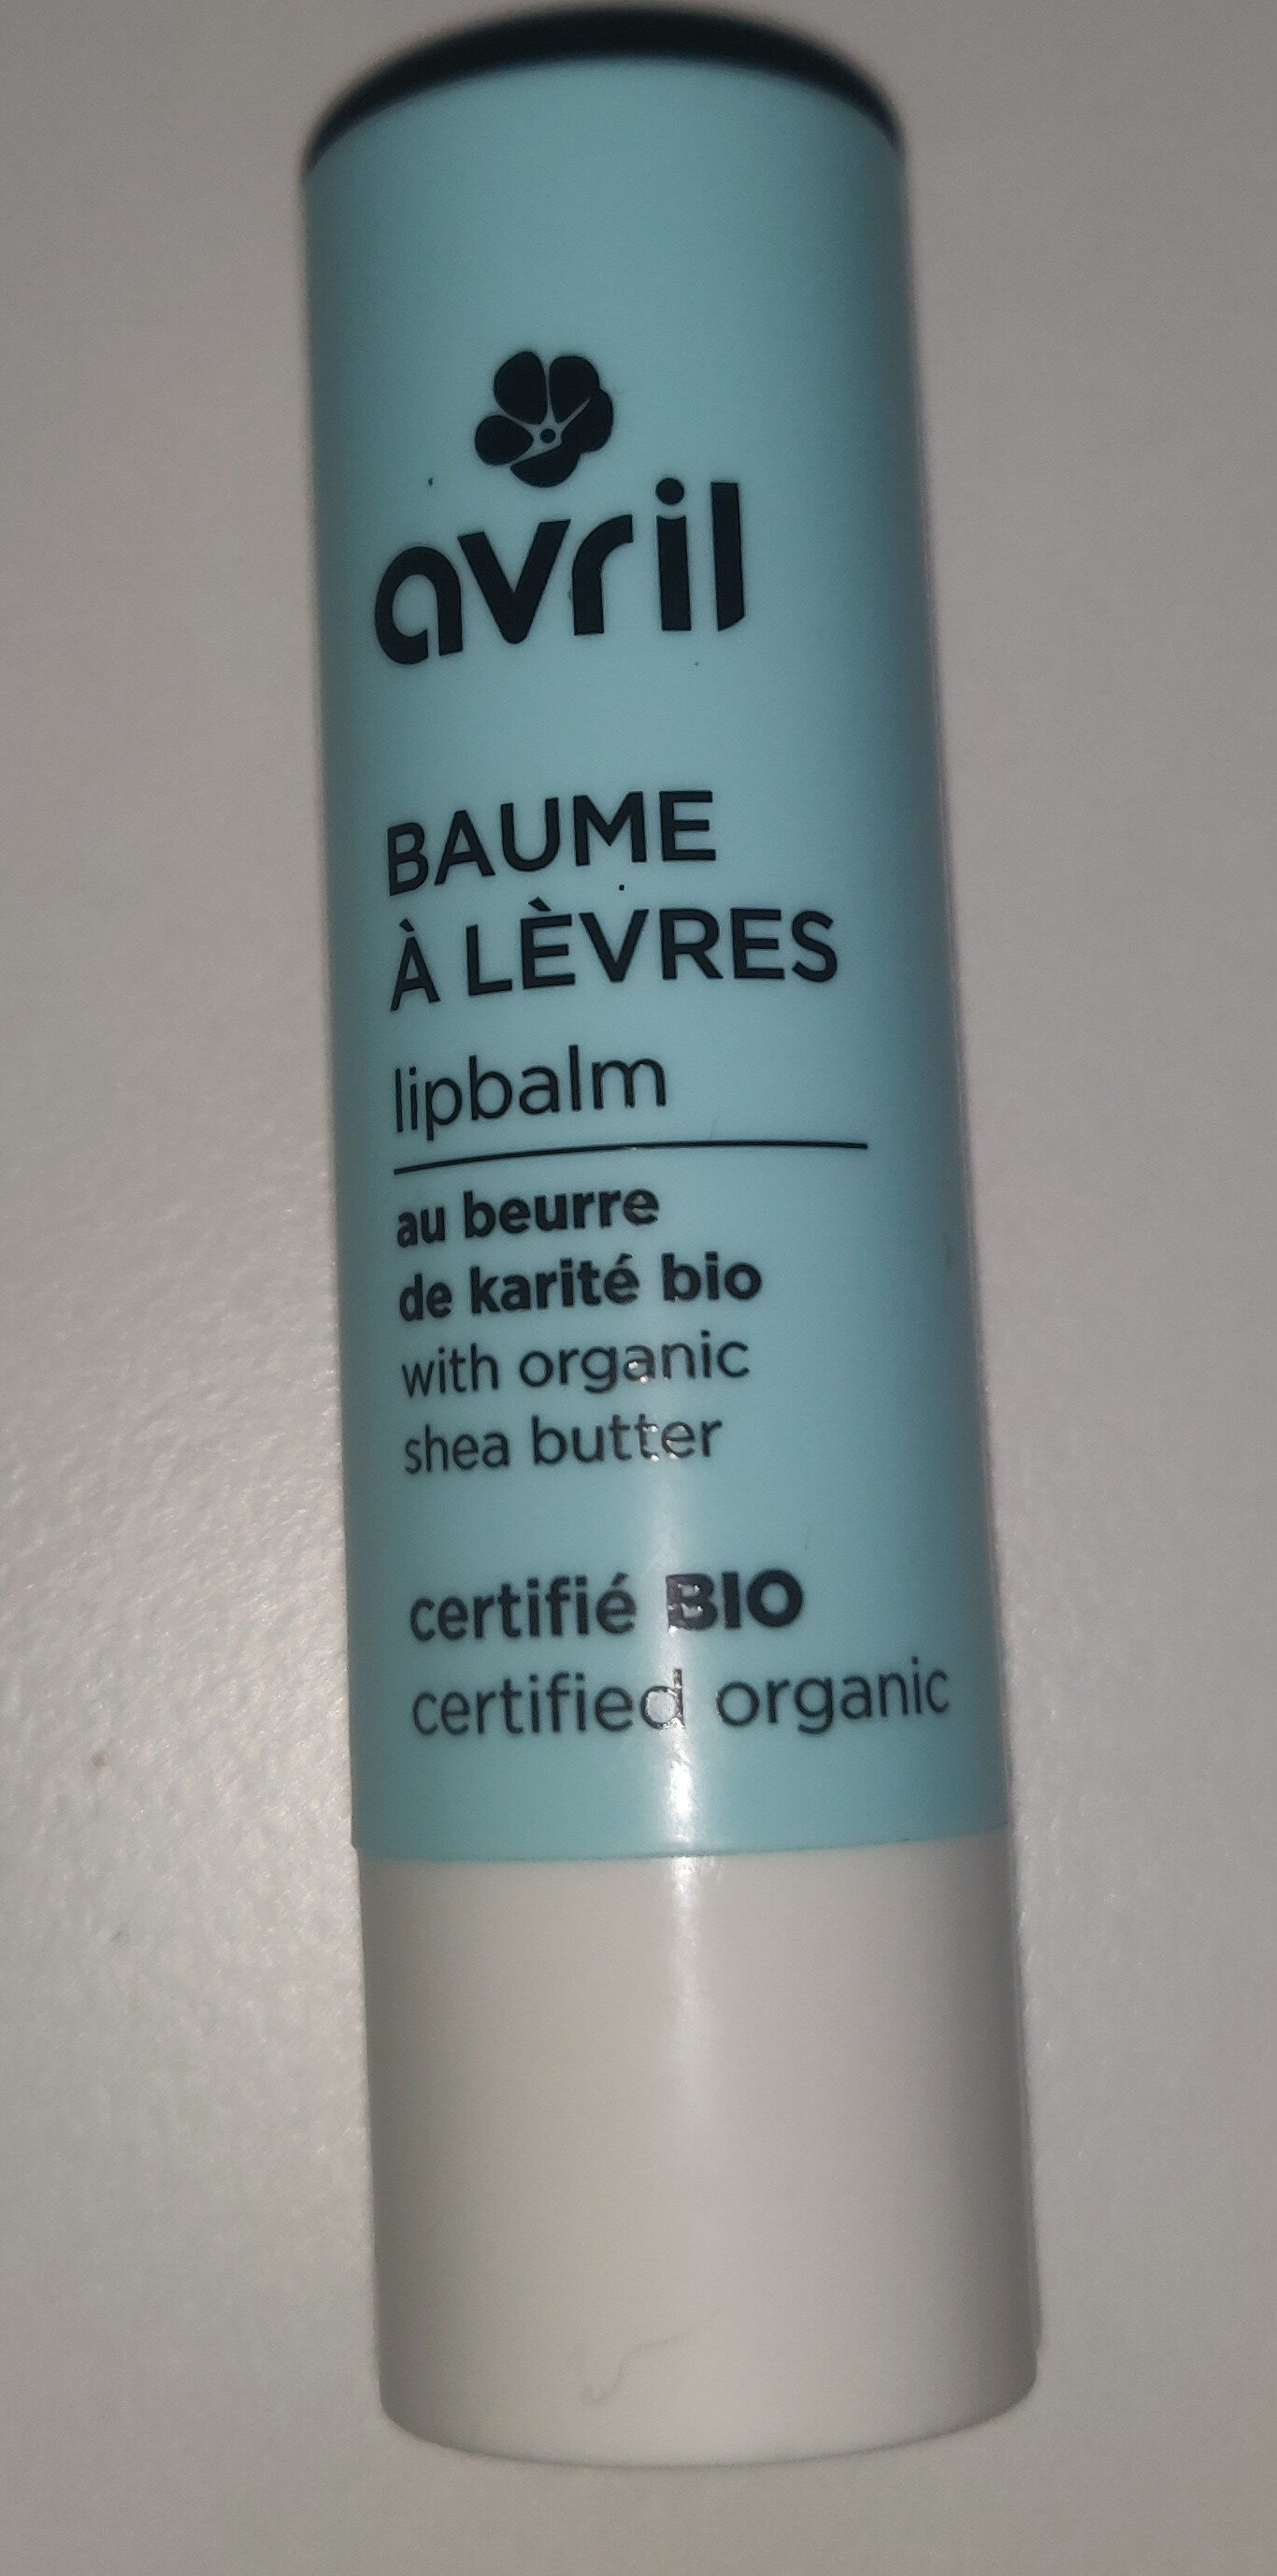 Baume à lèvres - Produkt - fr